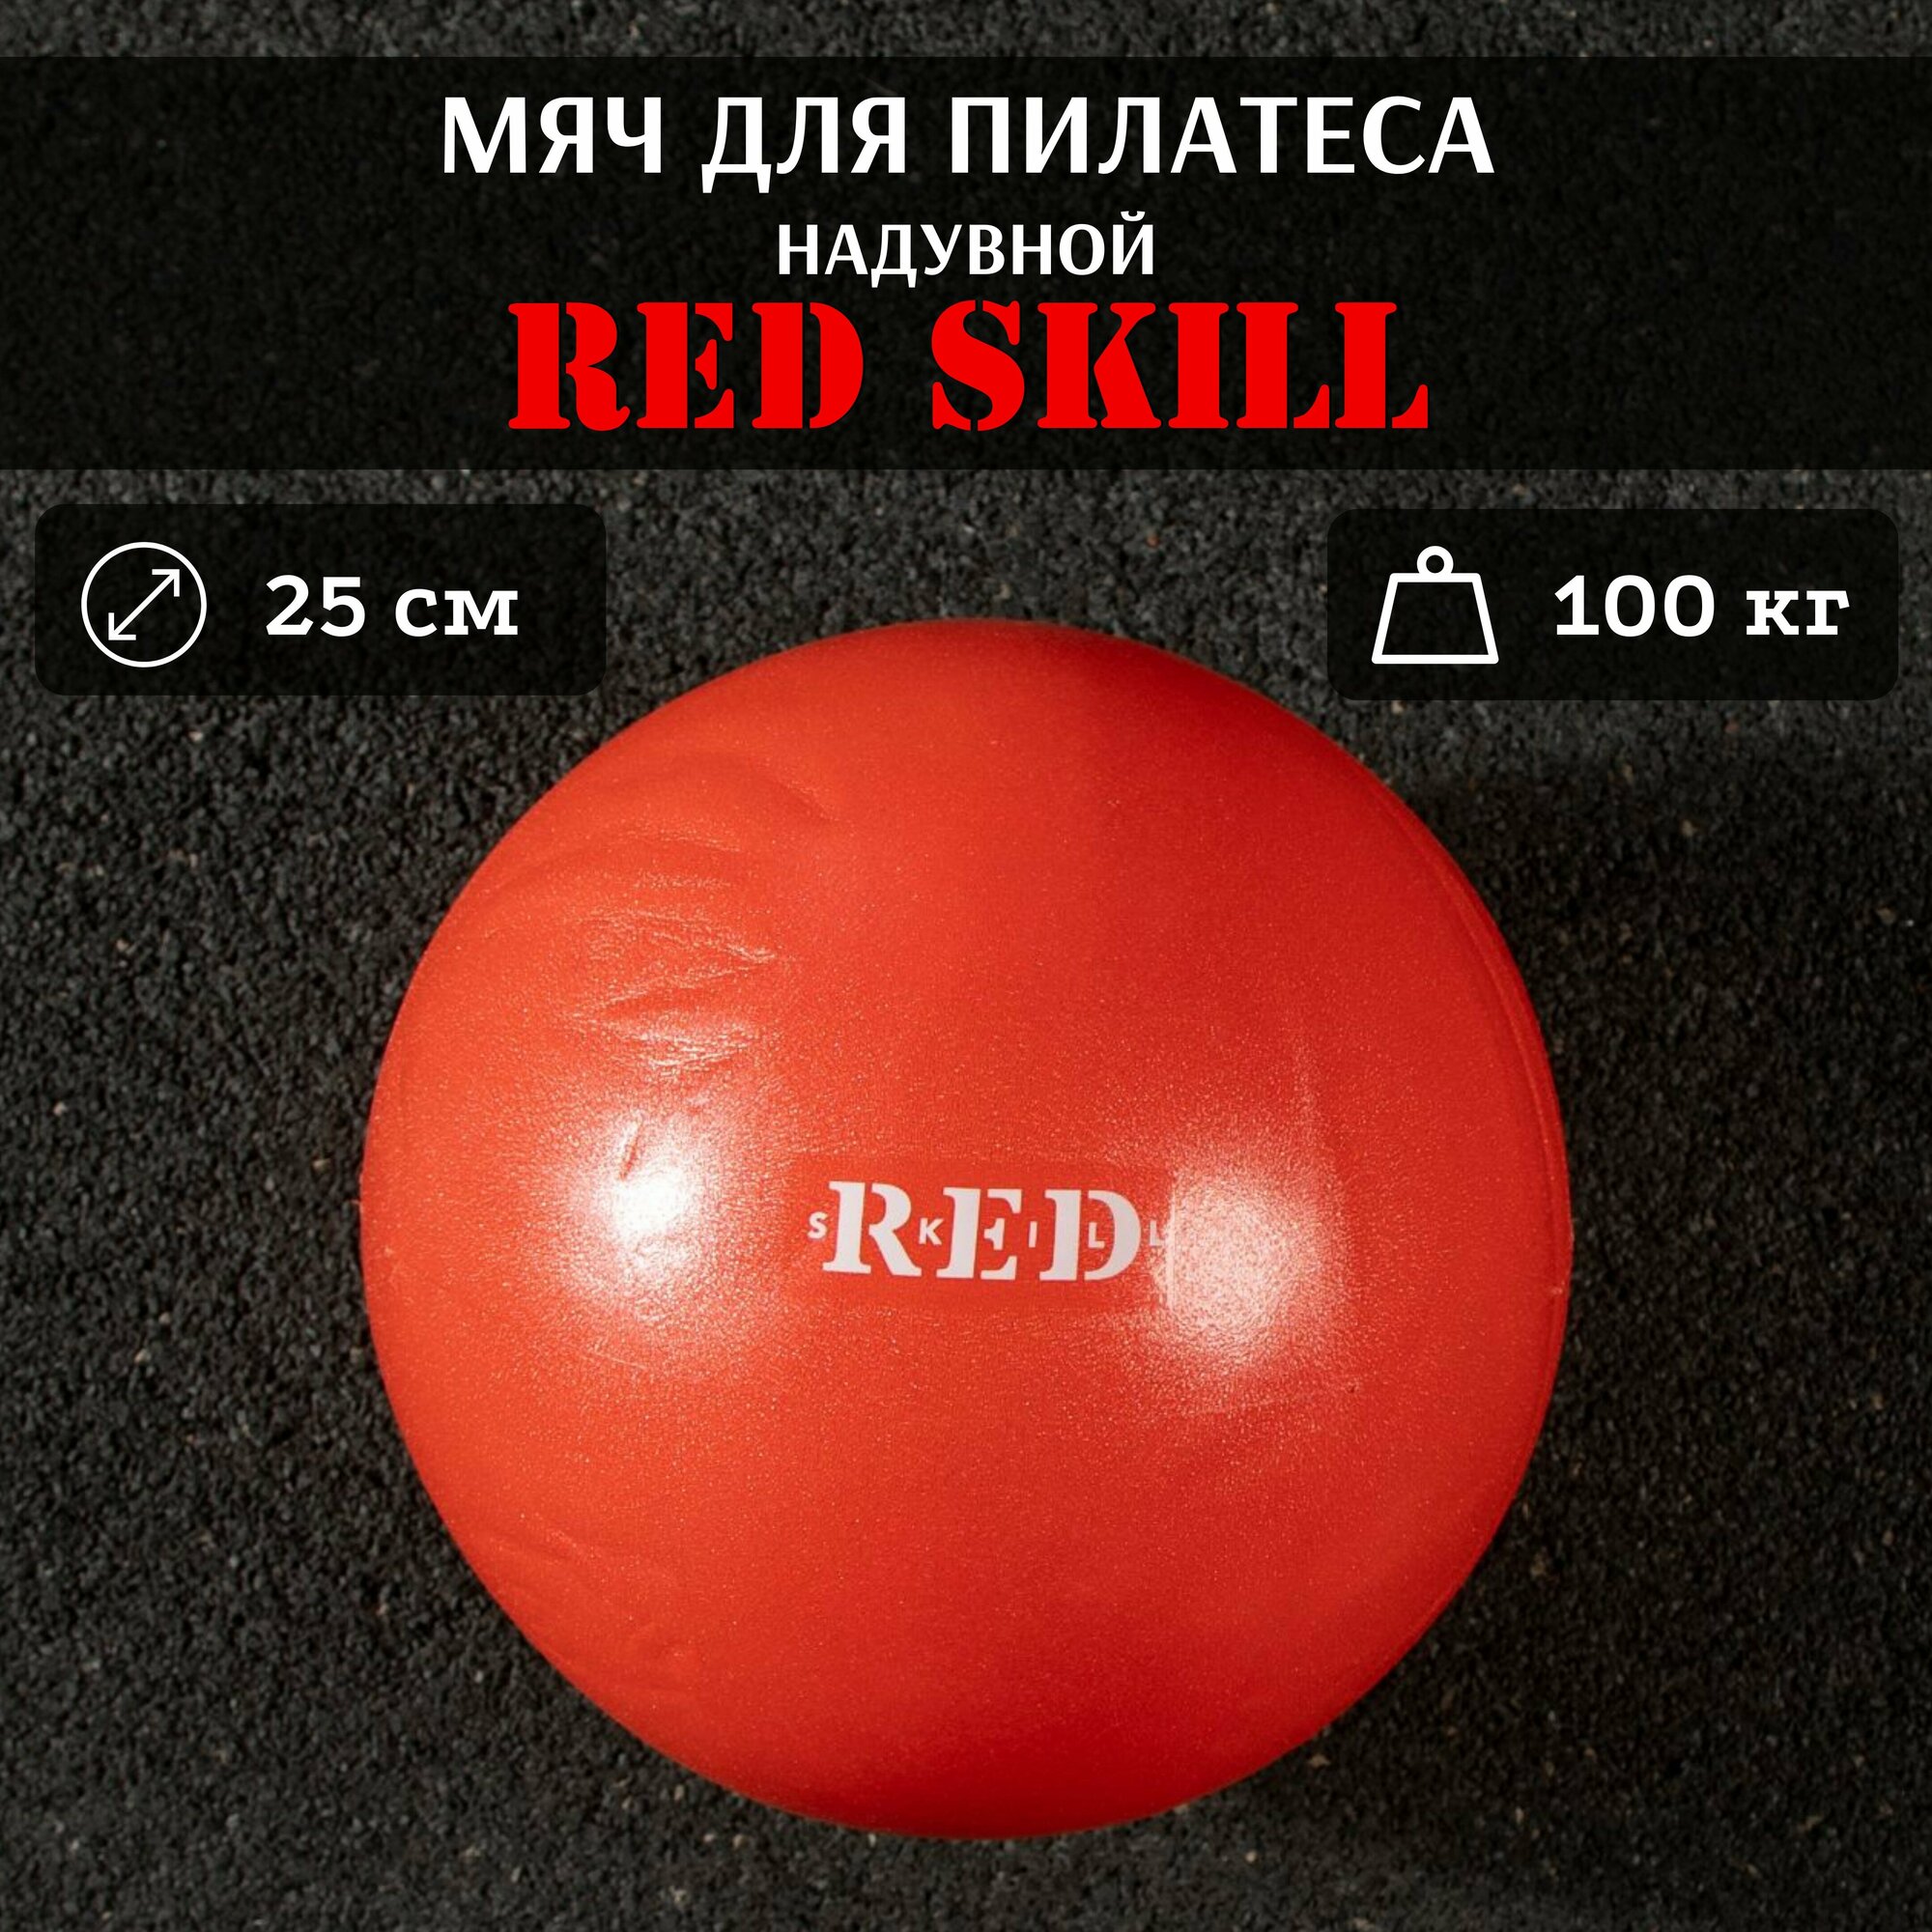 Надувной мяч для пилатеса RED Skill, 25 см